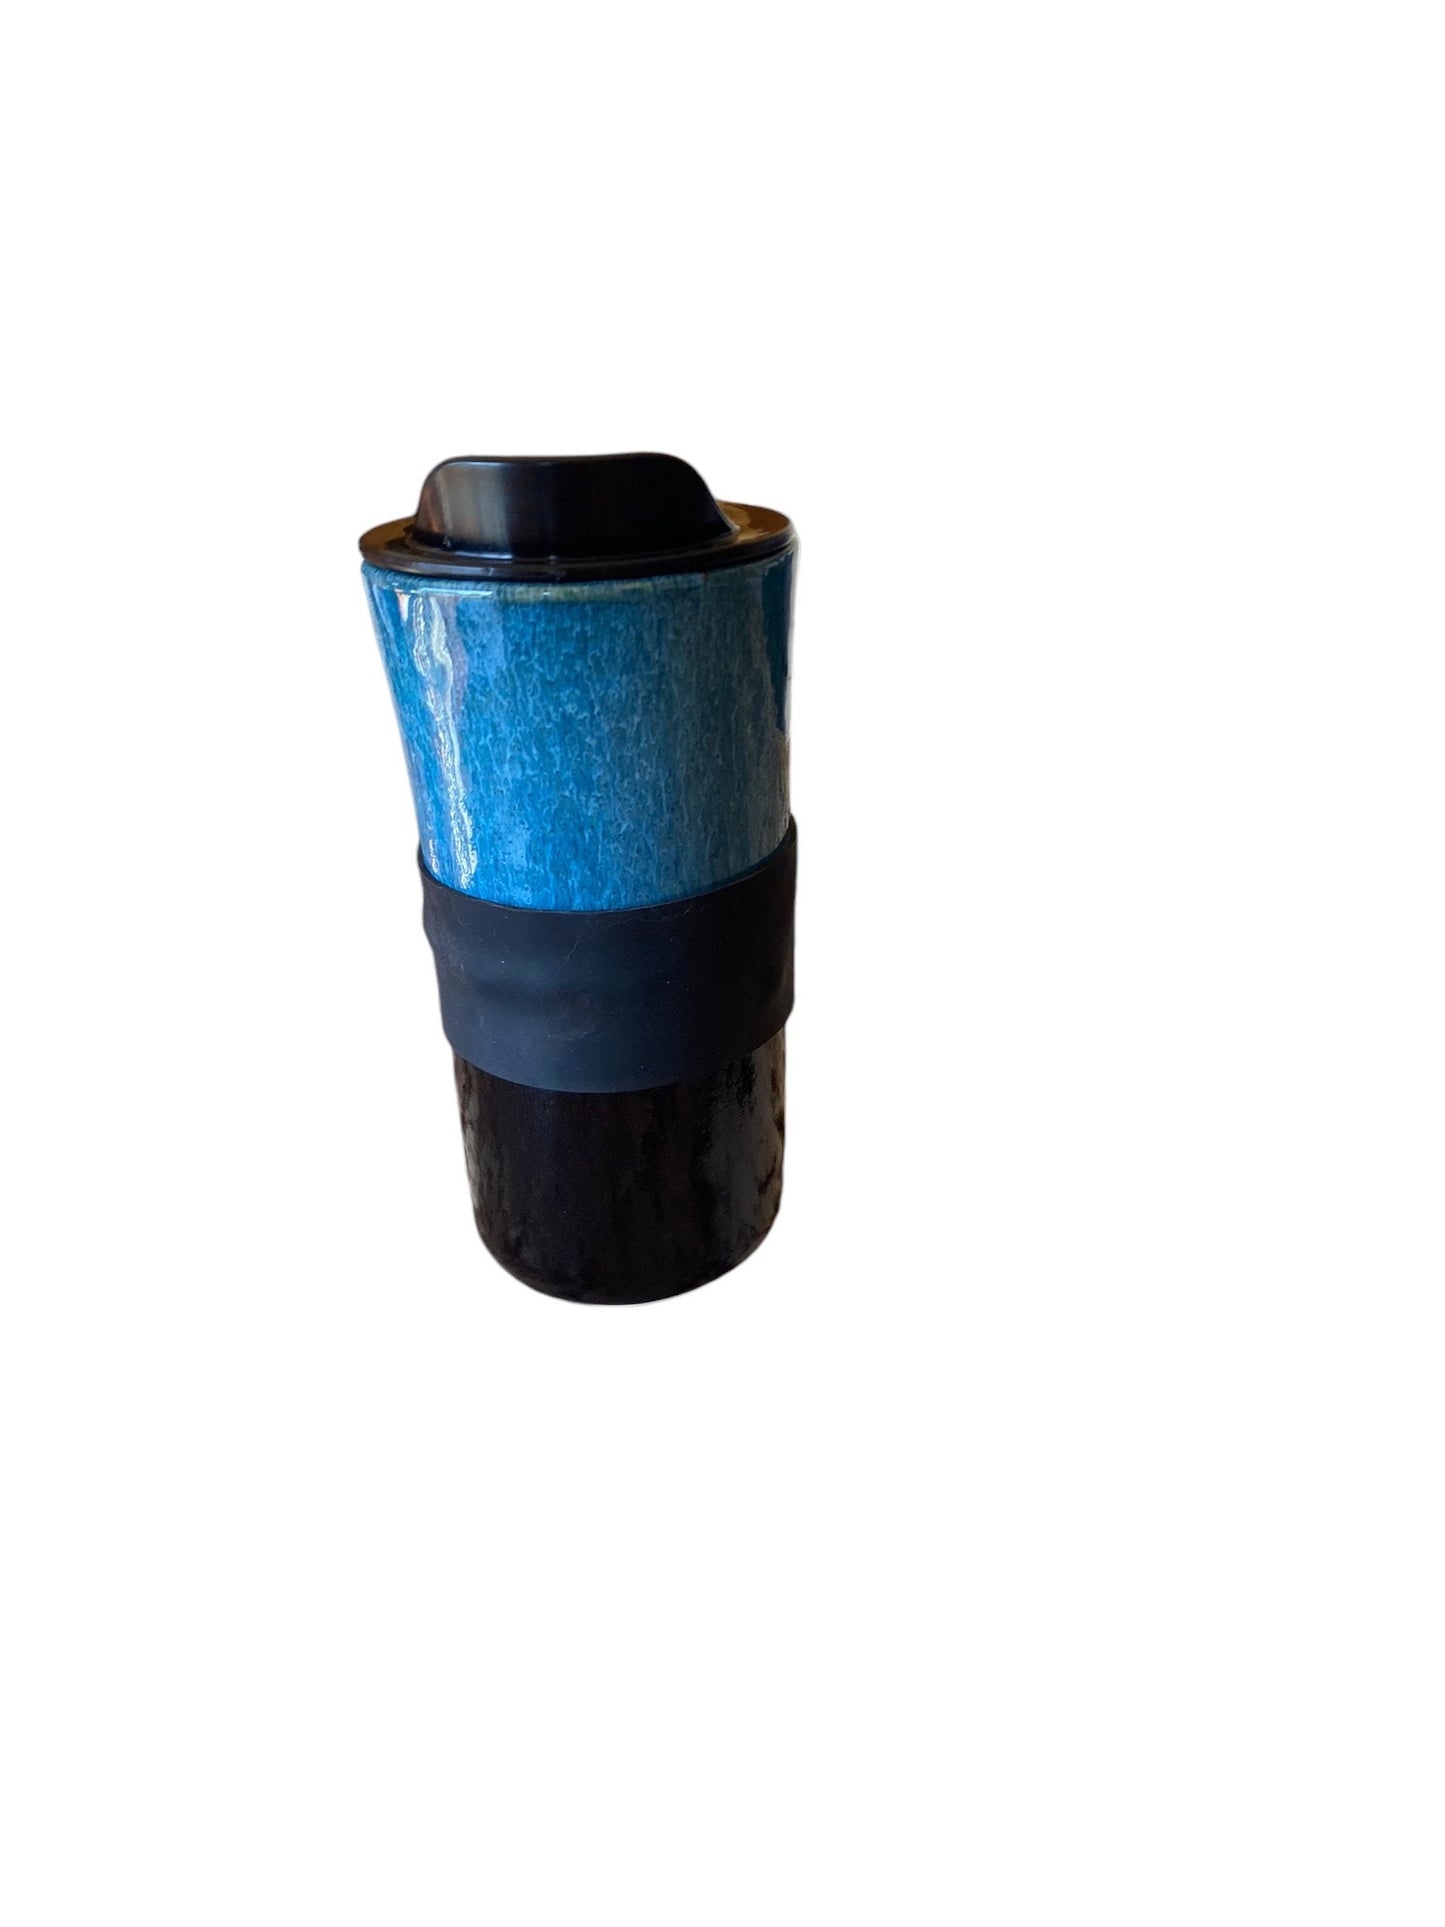 Handmade Waterfall  Travel Mug In Turquoise and Black - Travel Mug - Pottery Mug -  Coffee Mug